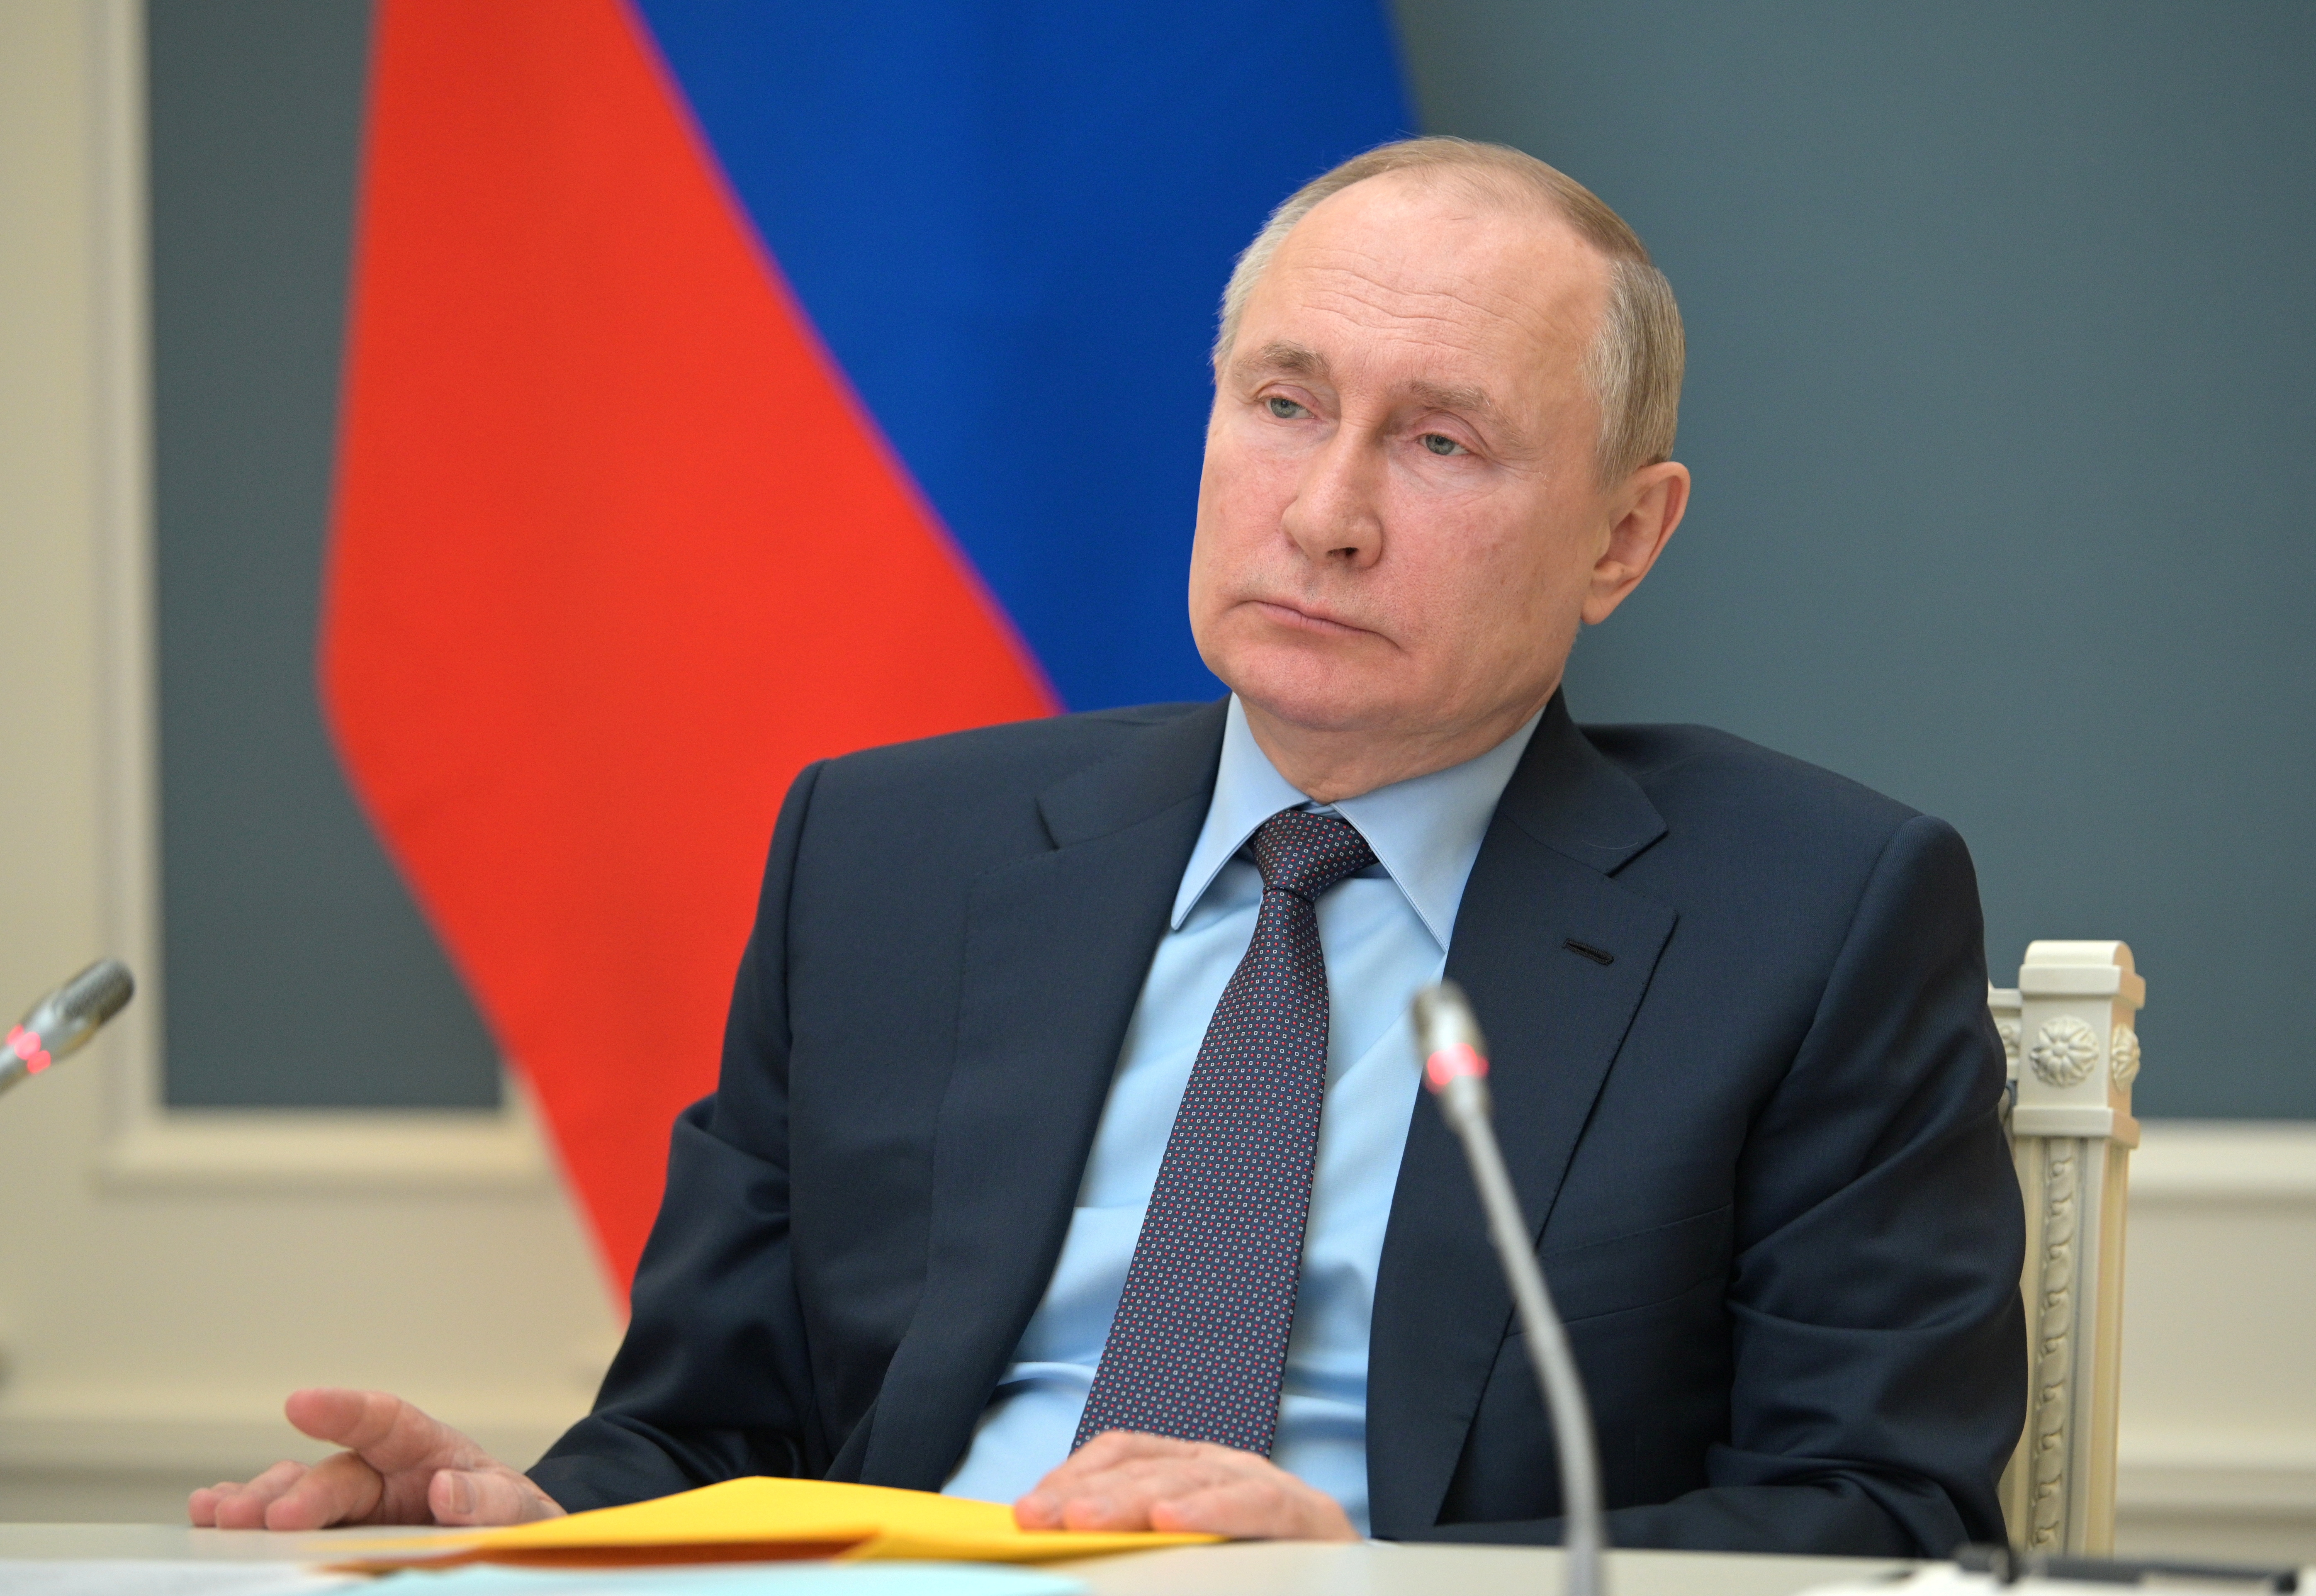 El presidente ruso Vladimir Putin durante una conferencia el 14 de abril (Sputnik/Alexei Druzhinin/Kremlin via REUTERS)